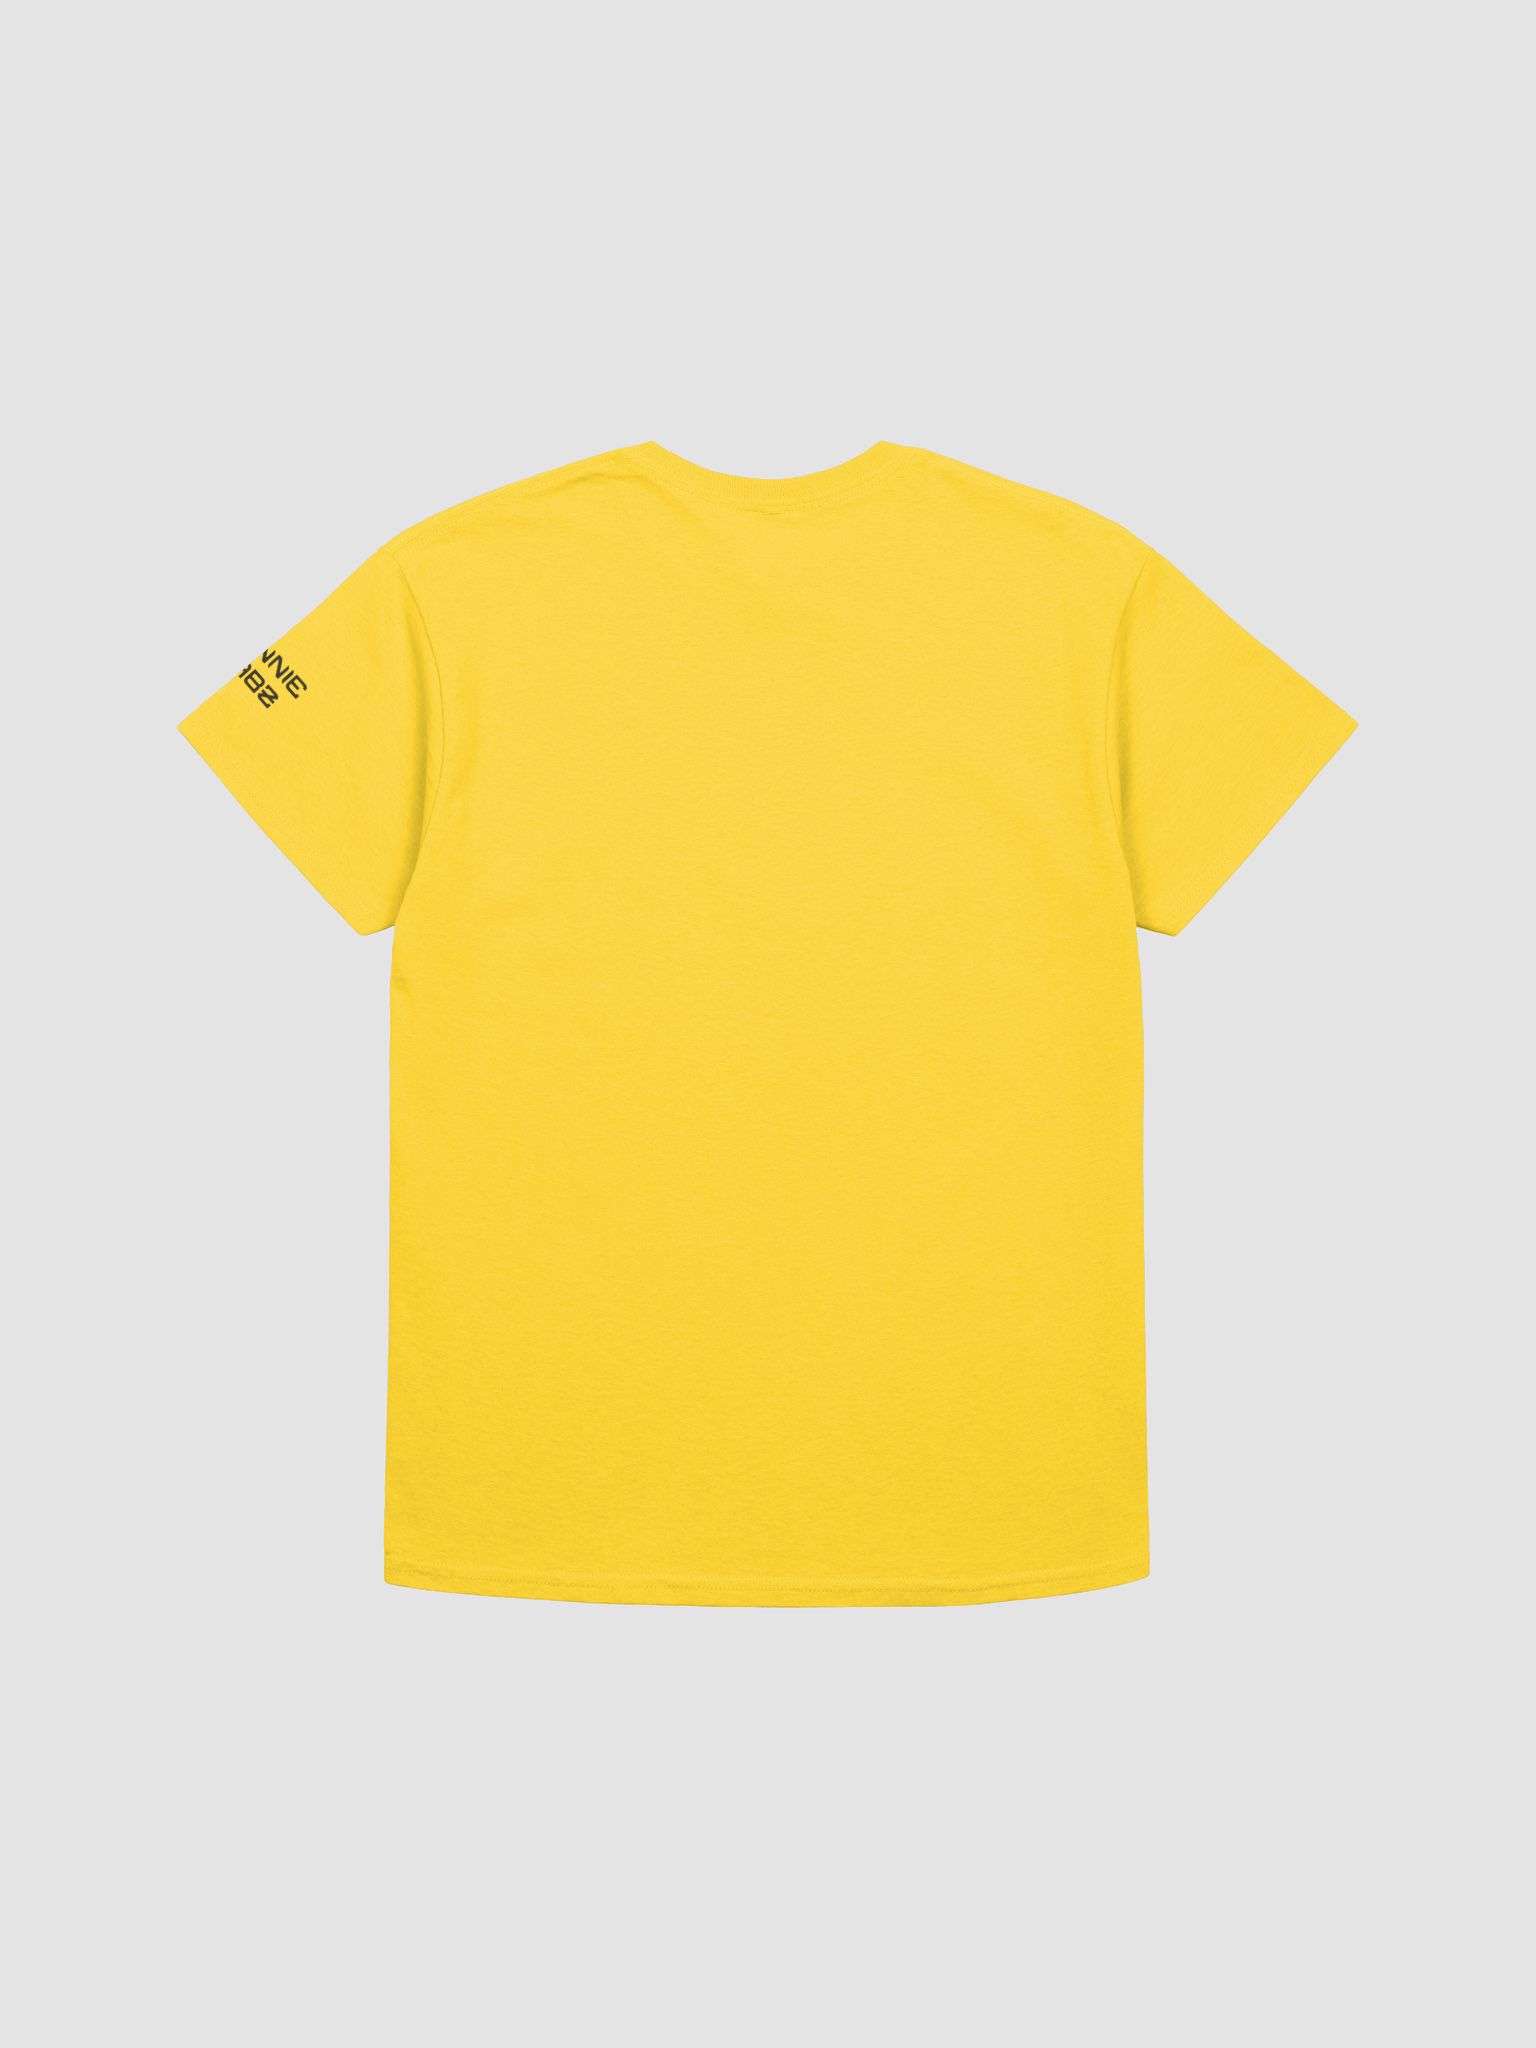 WinnieTabz T-Shirt | WinnieTabz Merch